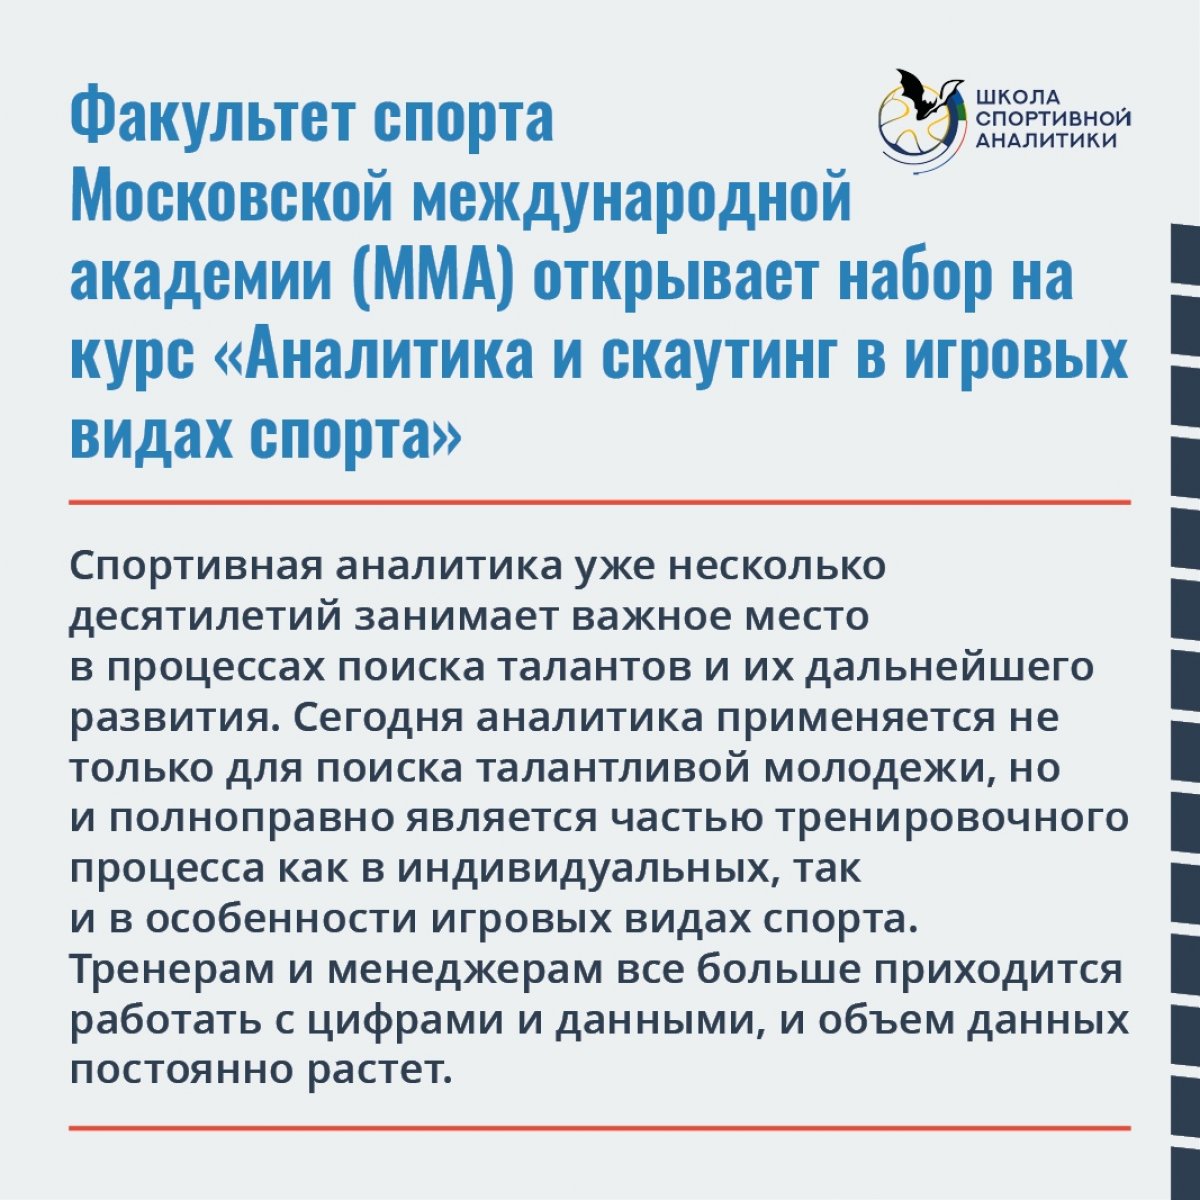 🚀 Факультет спорта Московской международной академии совместно с ведущим проектом по спортивной аналитике «Eastern Scout» при поддержке РФС